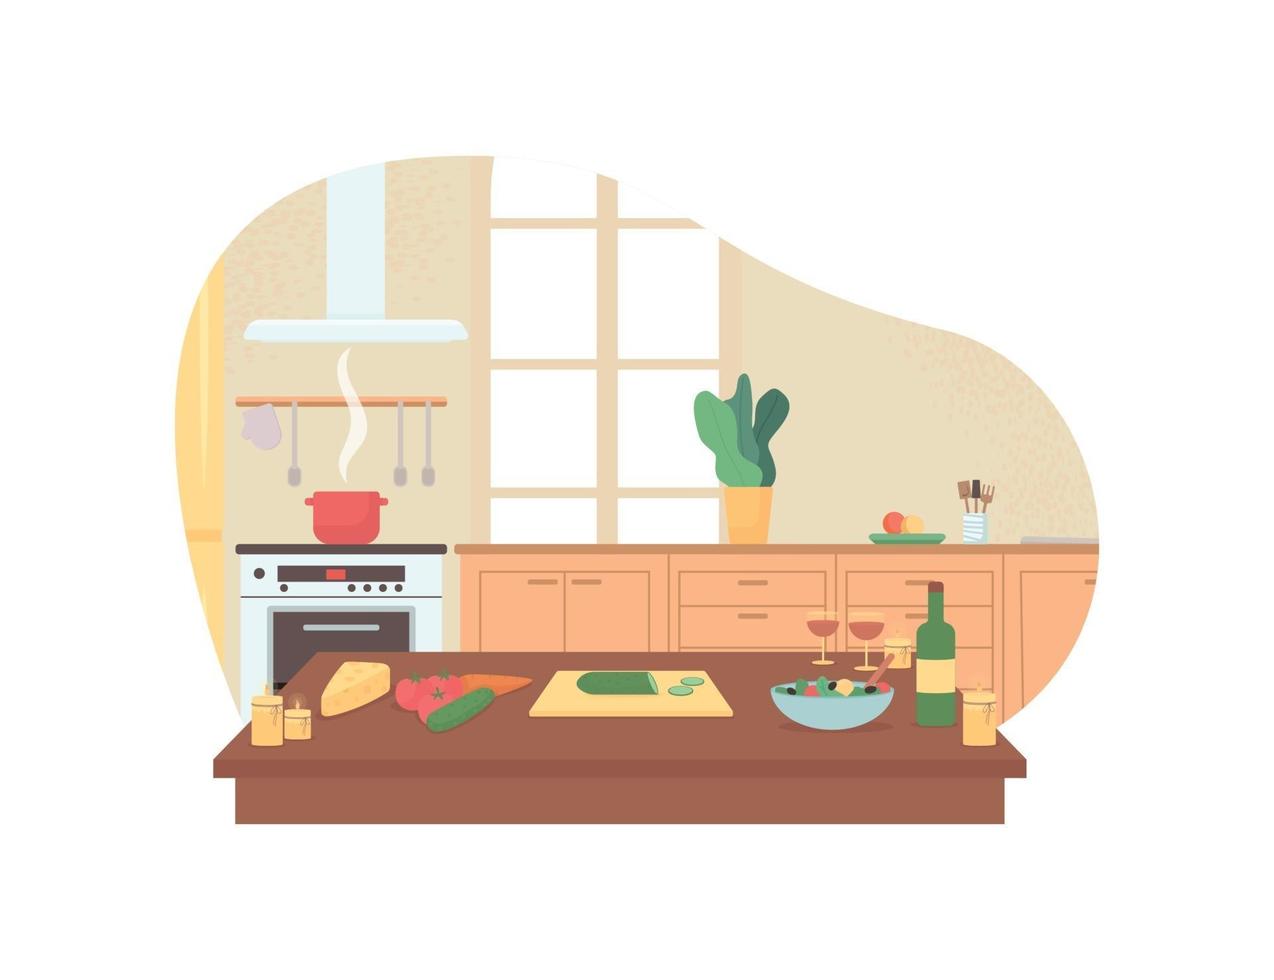 preparare una cena romantica nella cucina di casa banner web vettoriale 2d, poster